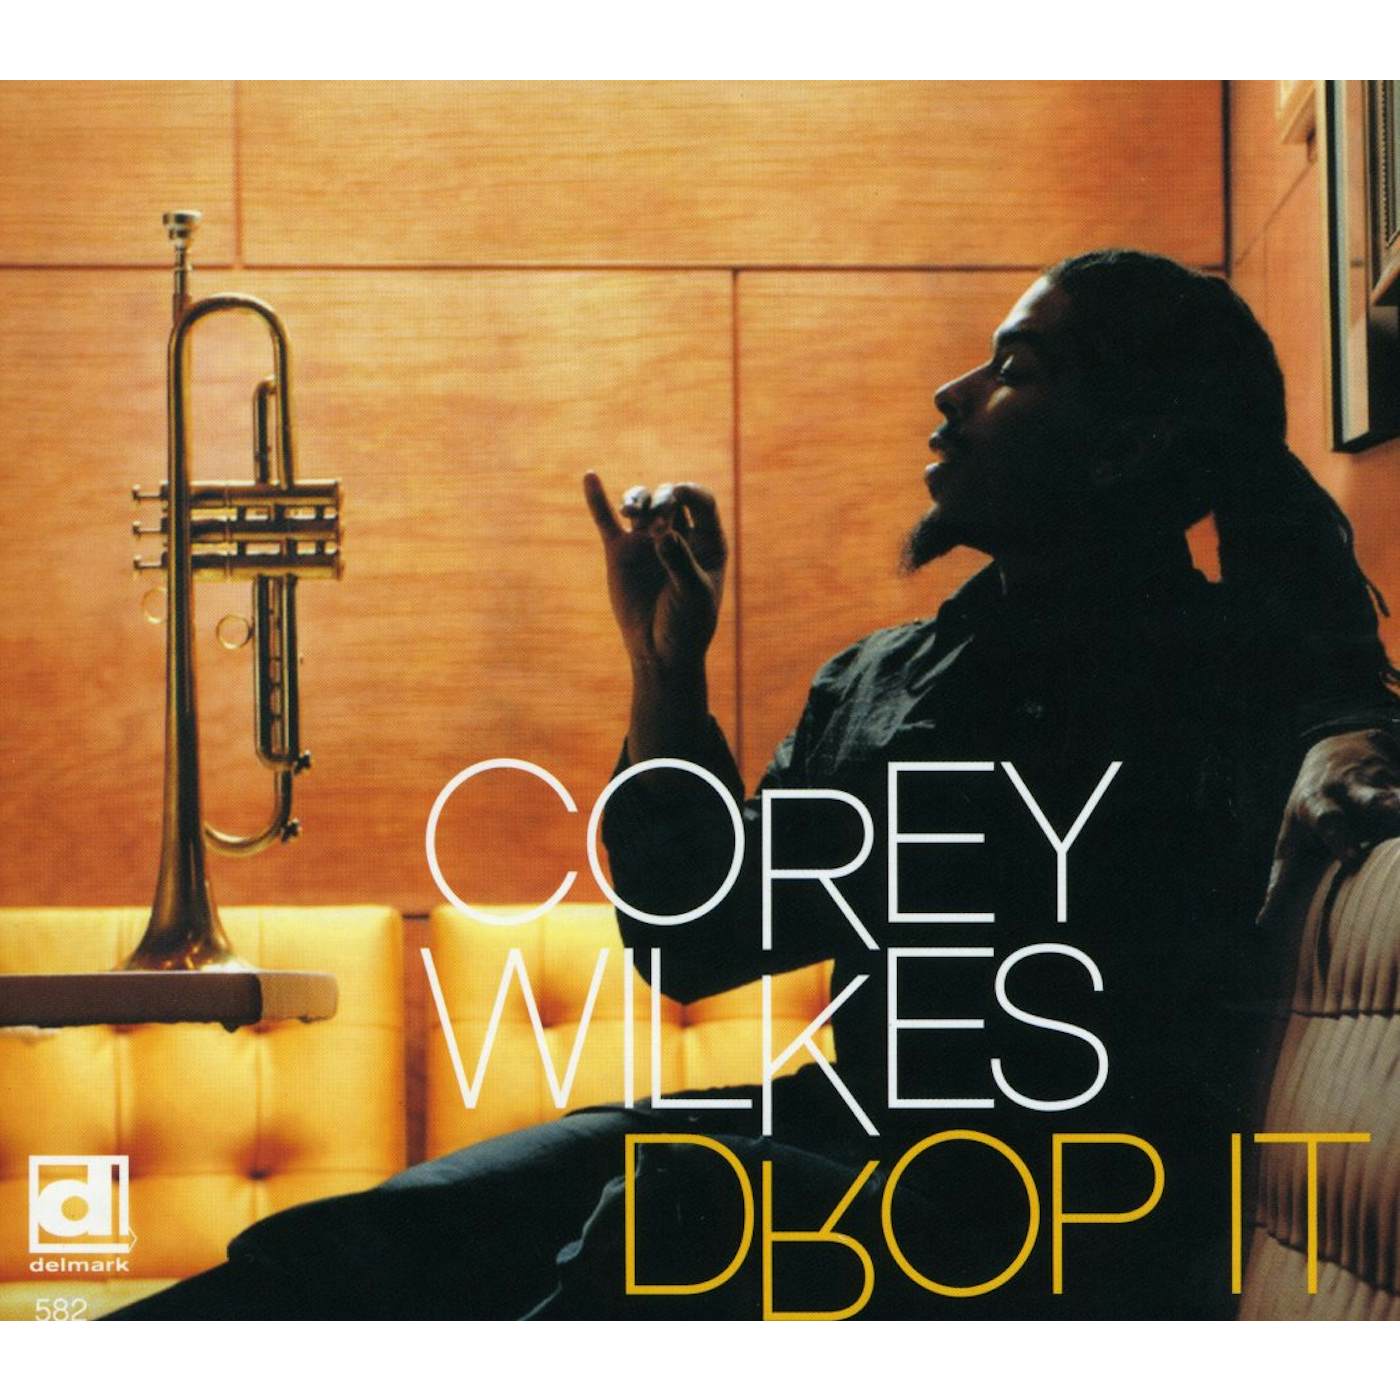 Corey Wilkes DROP IT CD